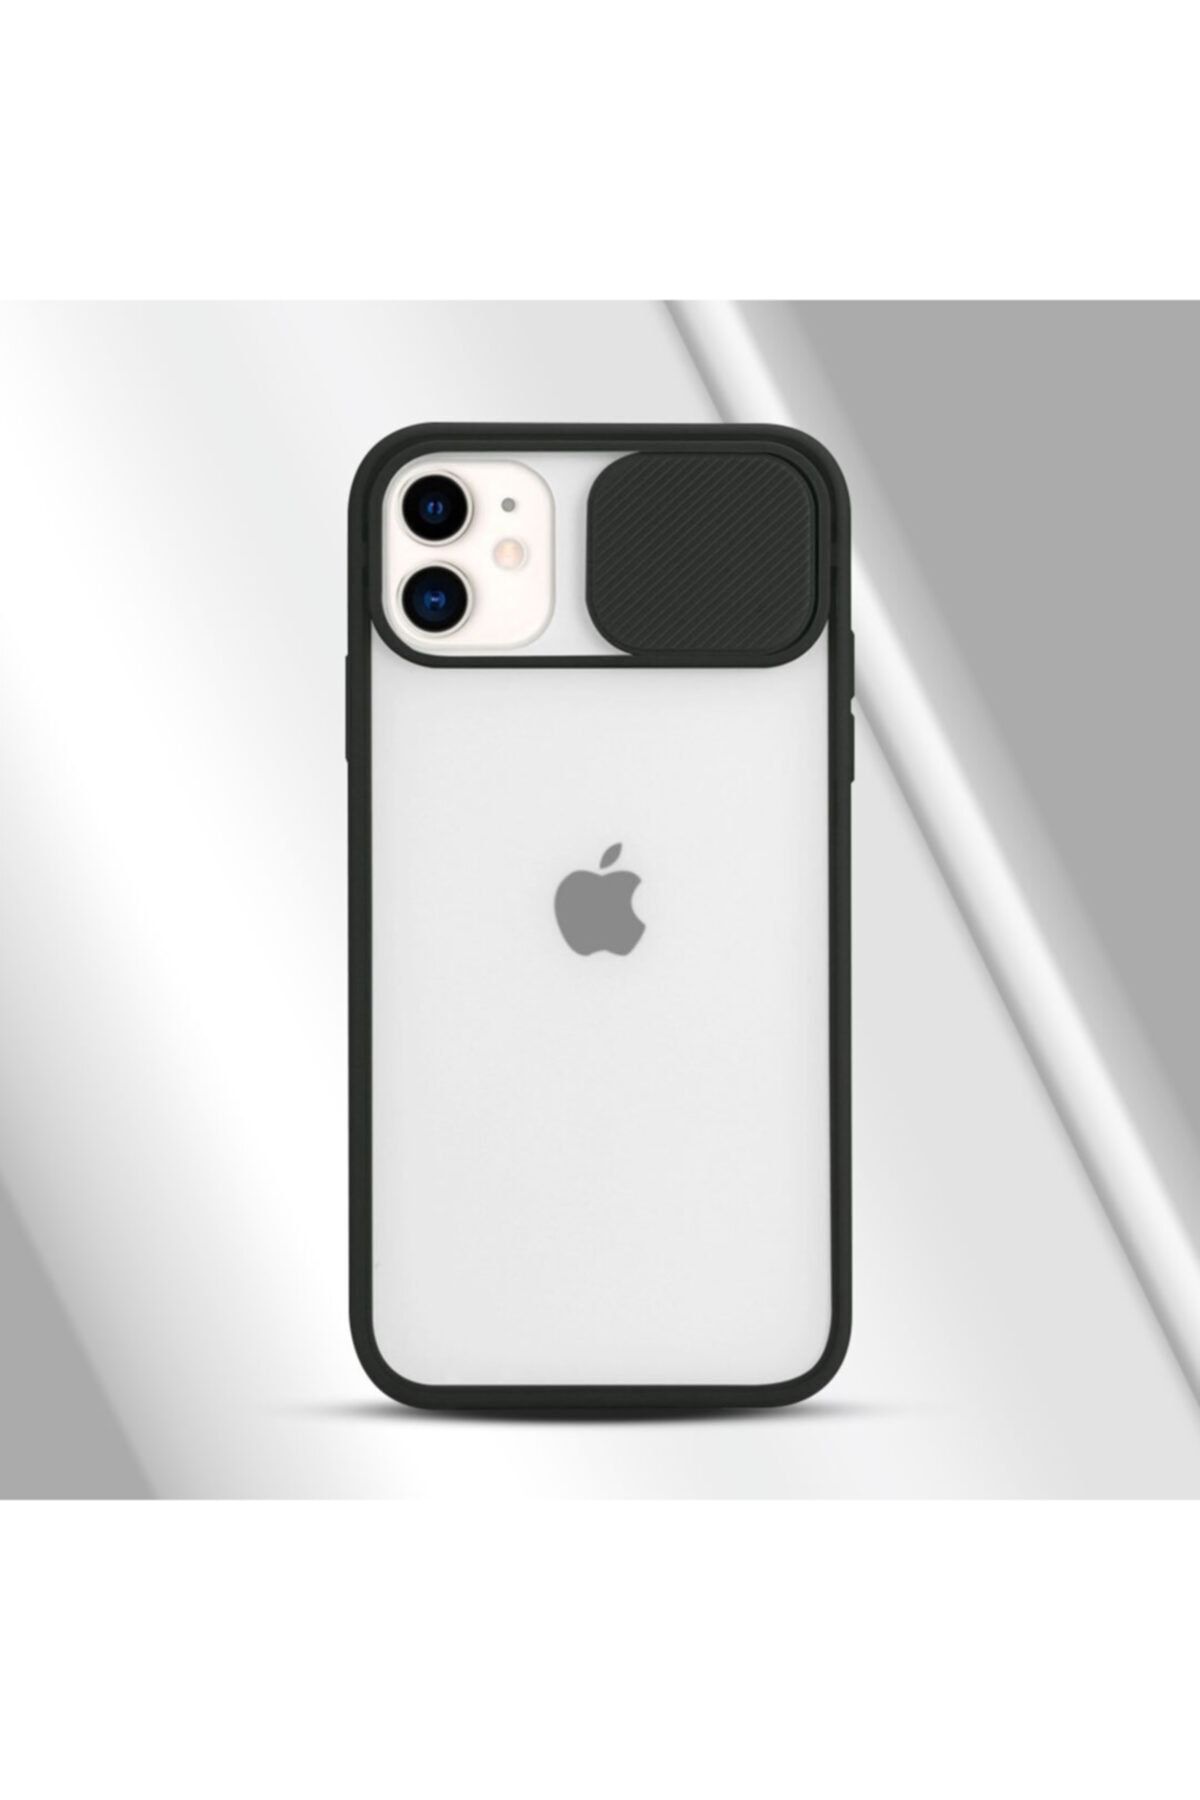 EPRO Iphone 12 Mini Uyumlu Kamera Lens Korumalı Sürgülü Siyah Silikon Kılıf Slayt Özellikli Arka Kapak.